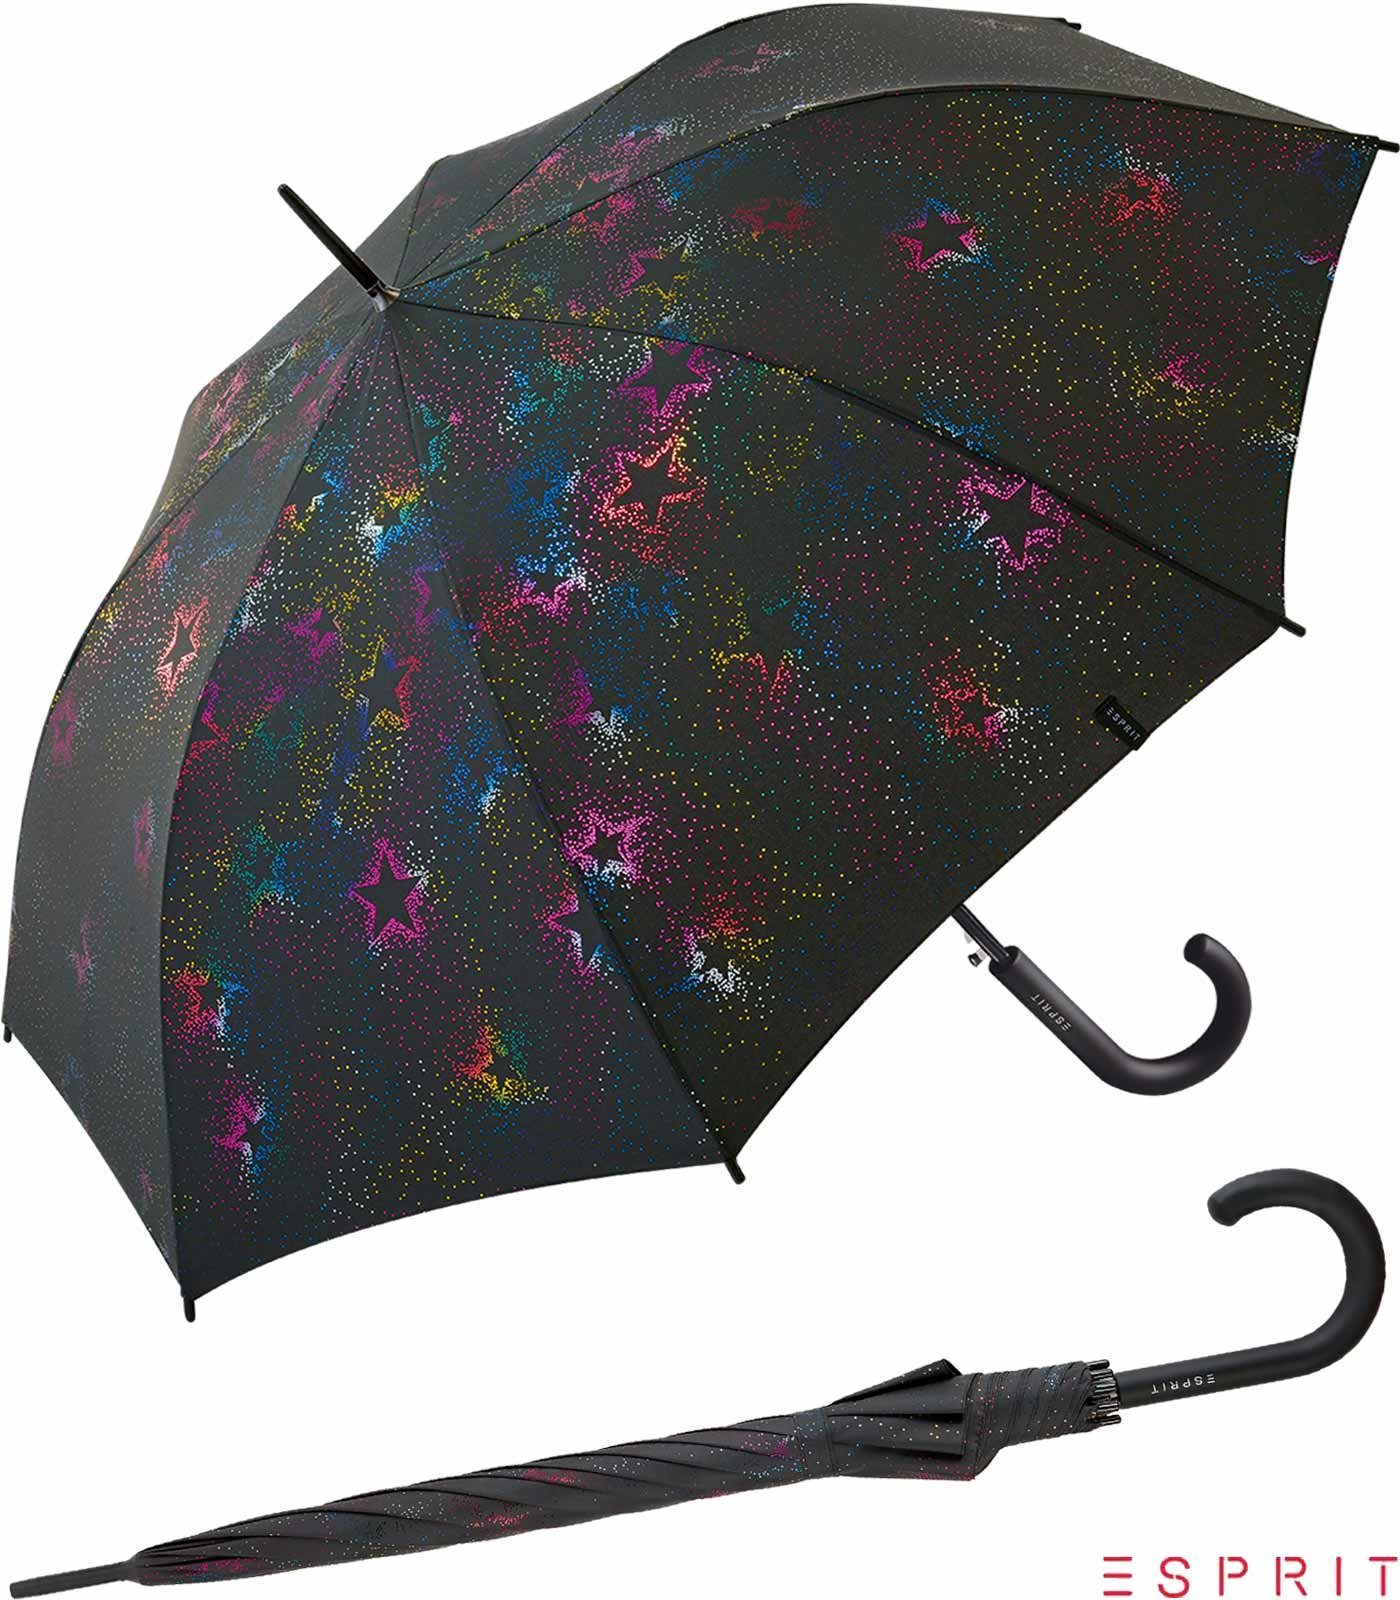 Esprit Langregenschirm Damen Auf-Automatik - Starburst - multimetallic, groß, stabil, mit verspieltem Sternenmuster schwarz-bunt